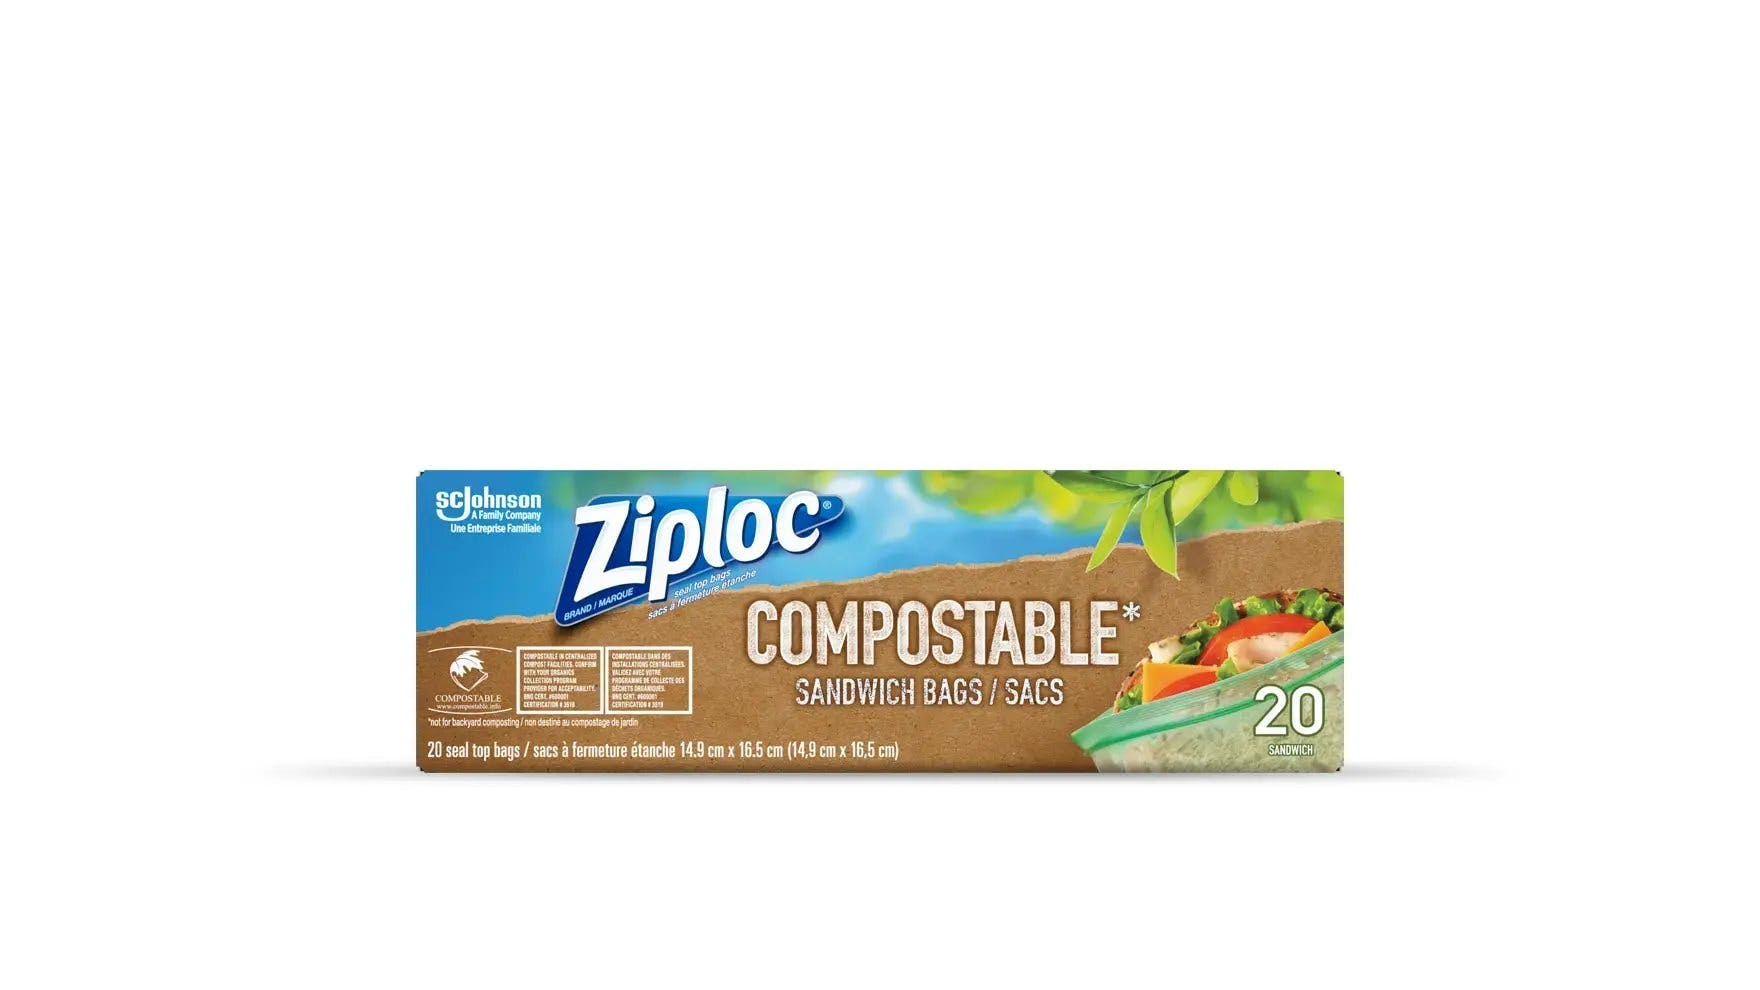 Devant de la boîte de sacs à sandwich compostables Ziploc.